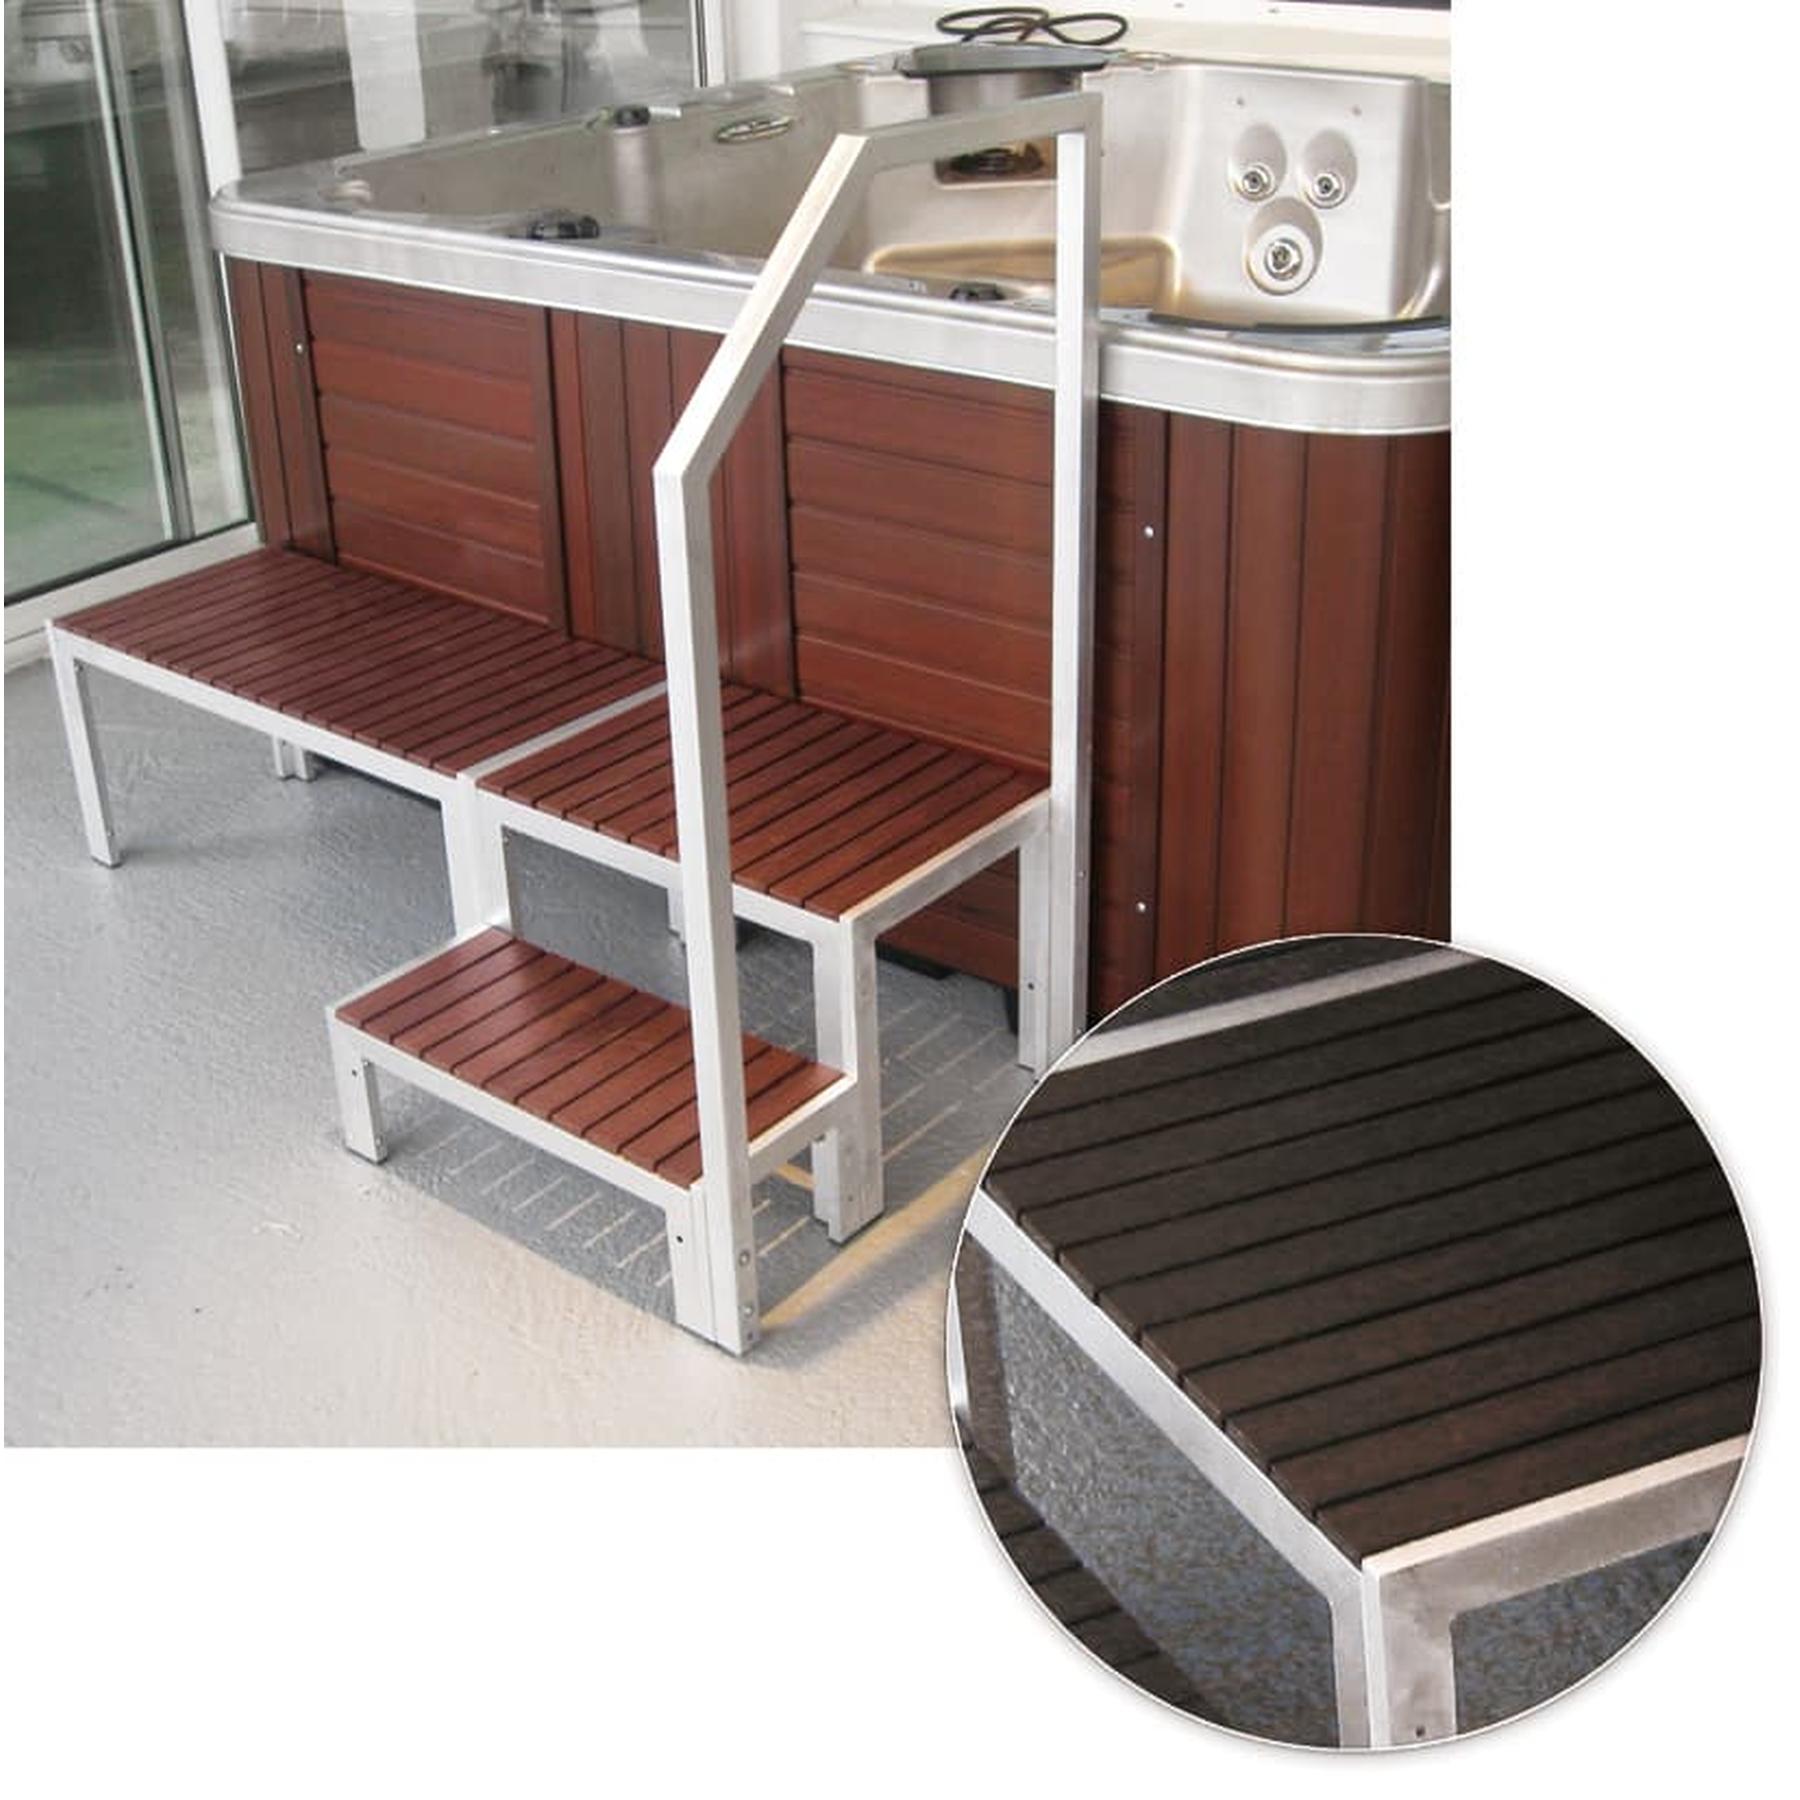 Pack confort pour SPA A700 composition : 1 rampe en ALU, 1 escalier et 1 banc en bois de synthèse couleur WENGE 